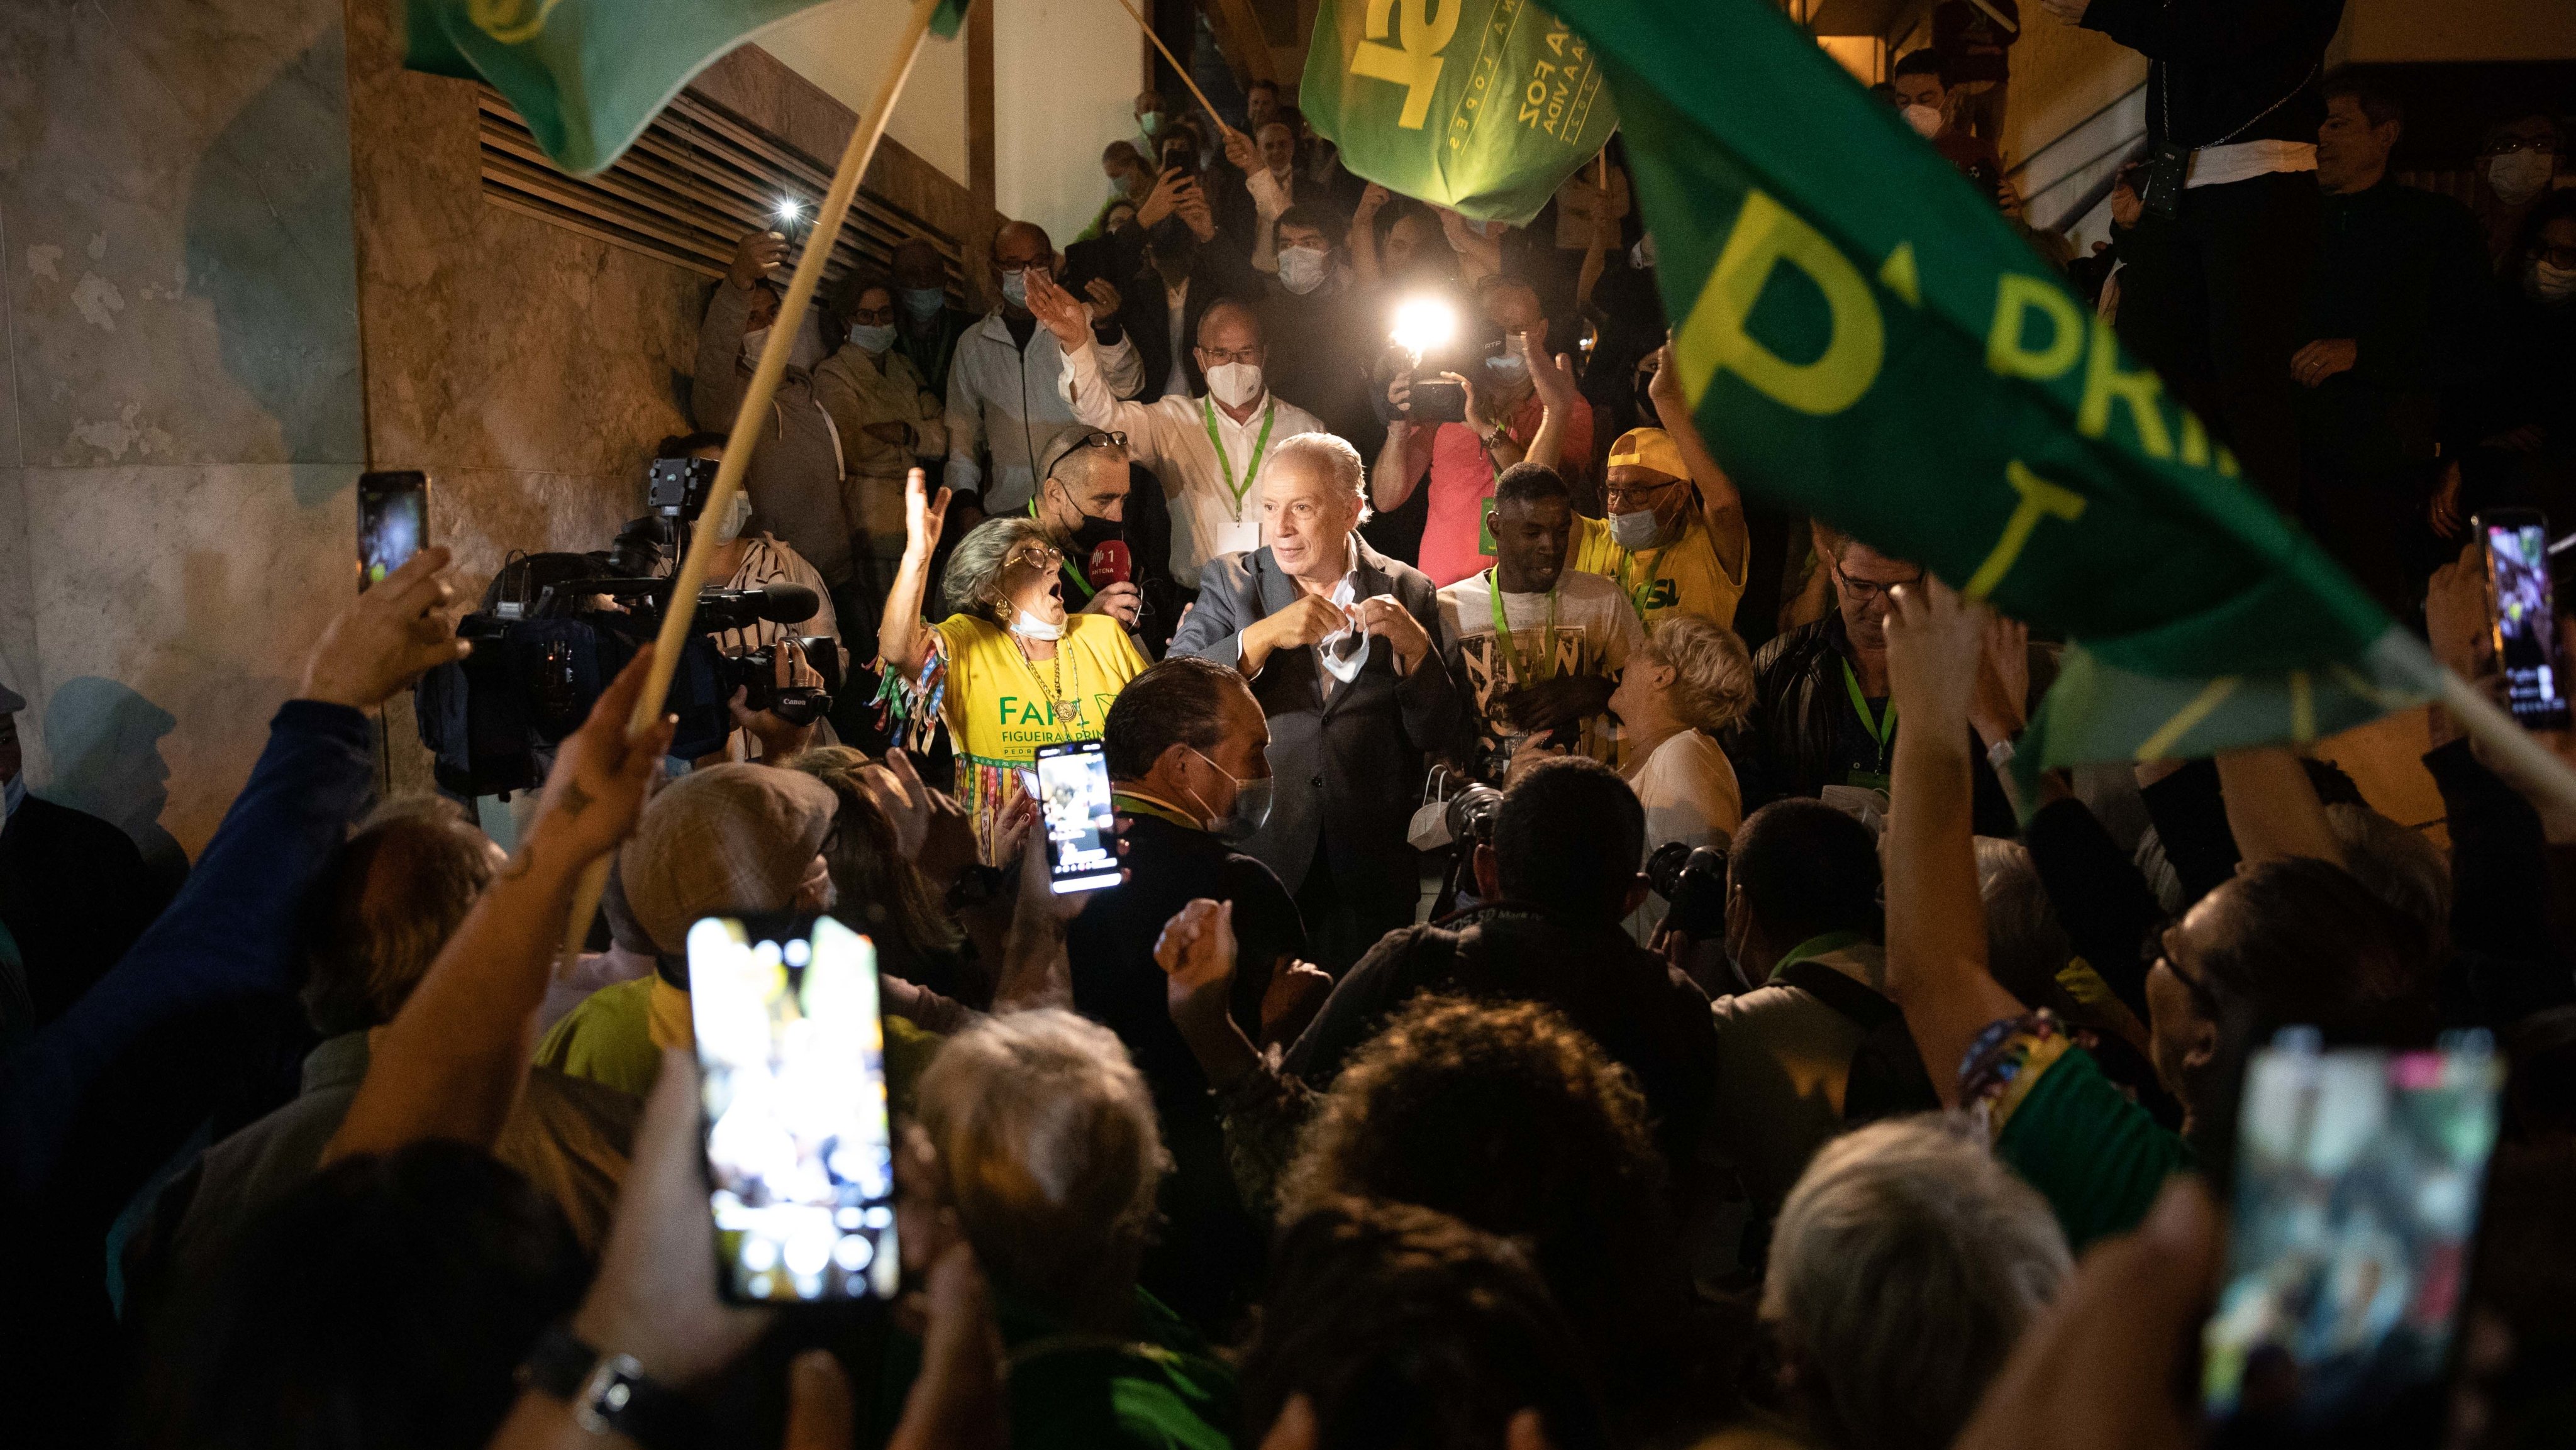 61 dos militantes suspensos são da Figueira da Foz, a maioria deles por terem apoiado o movimento de Pedro Santana Lopes